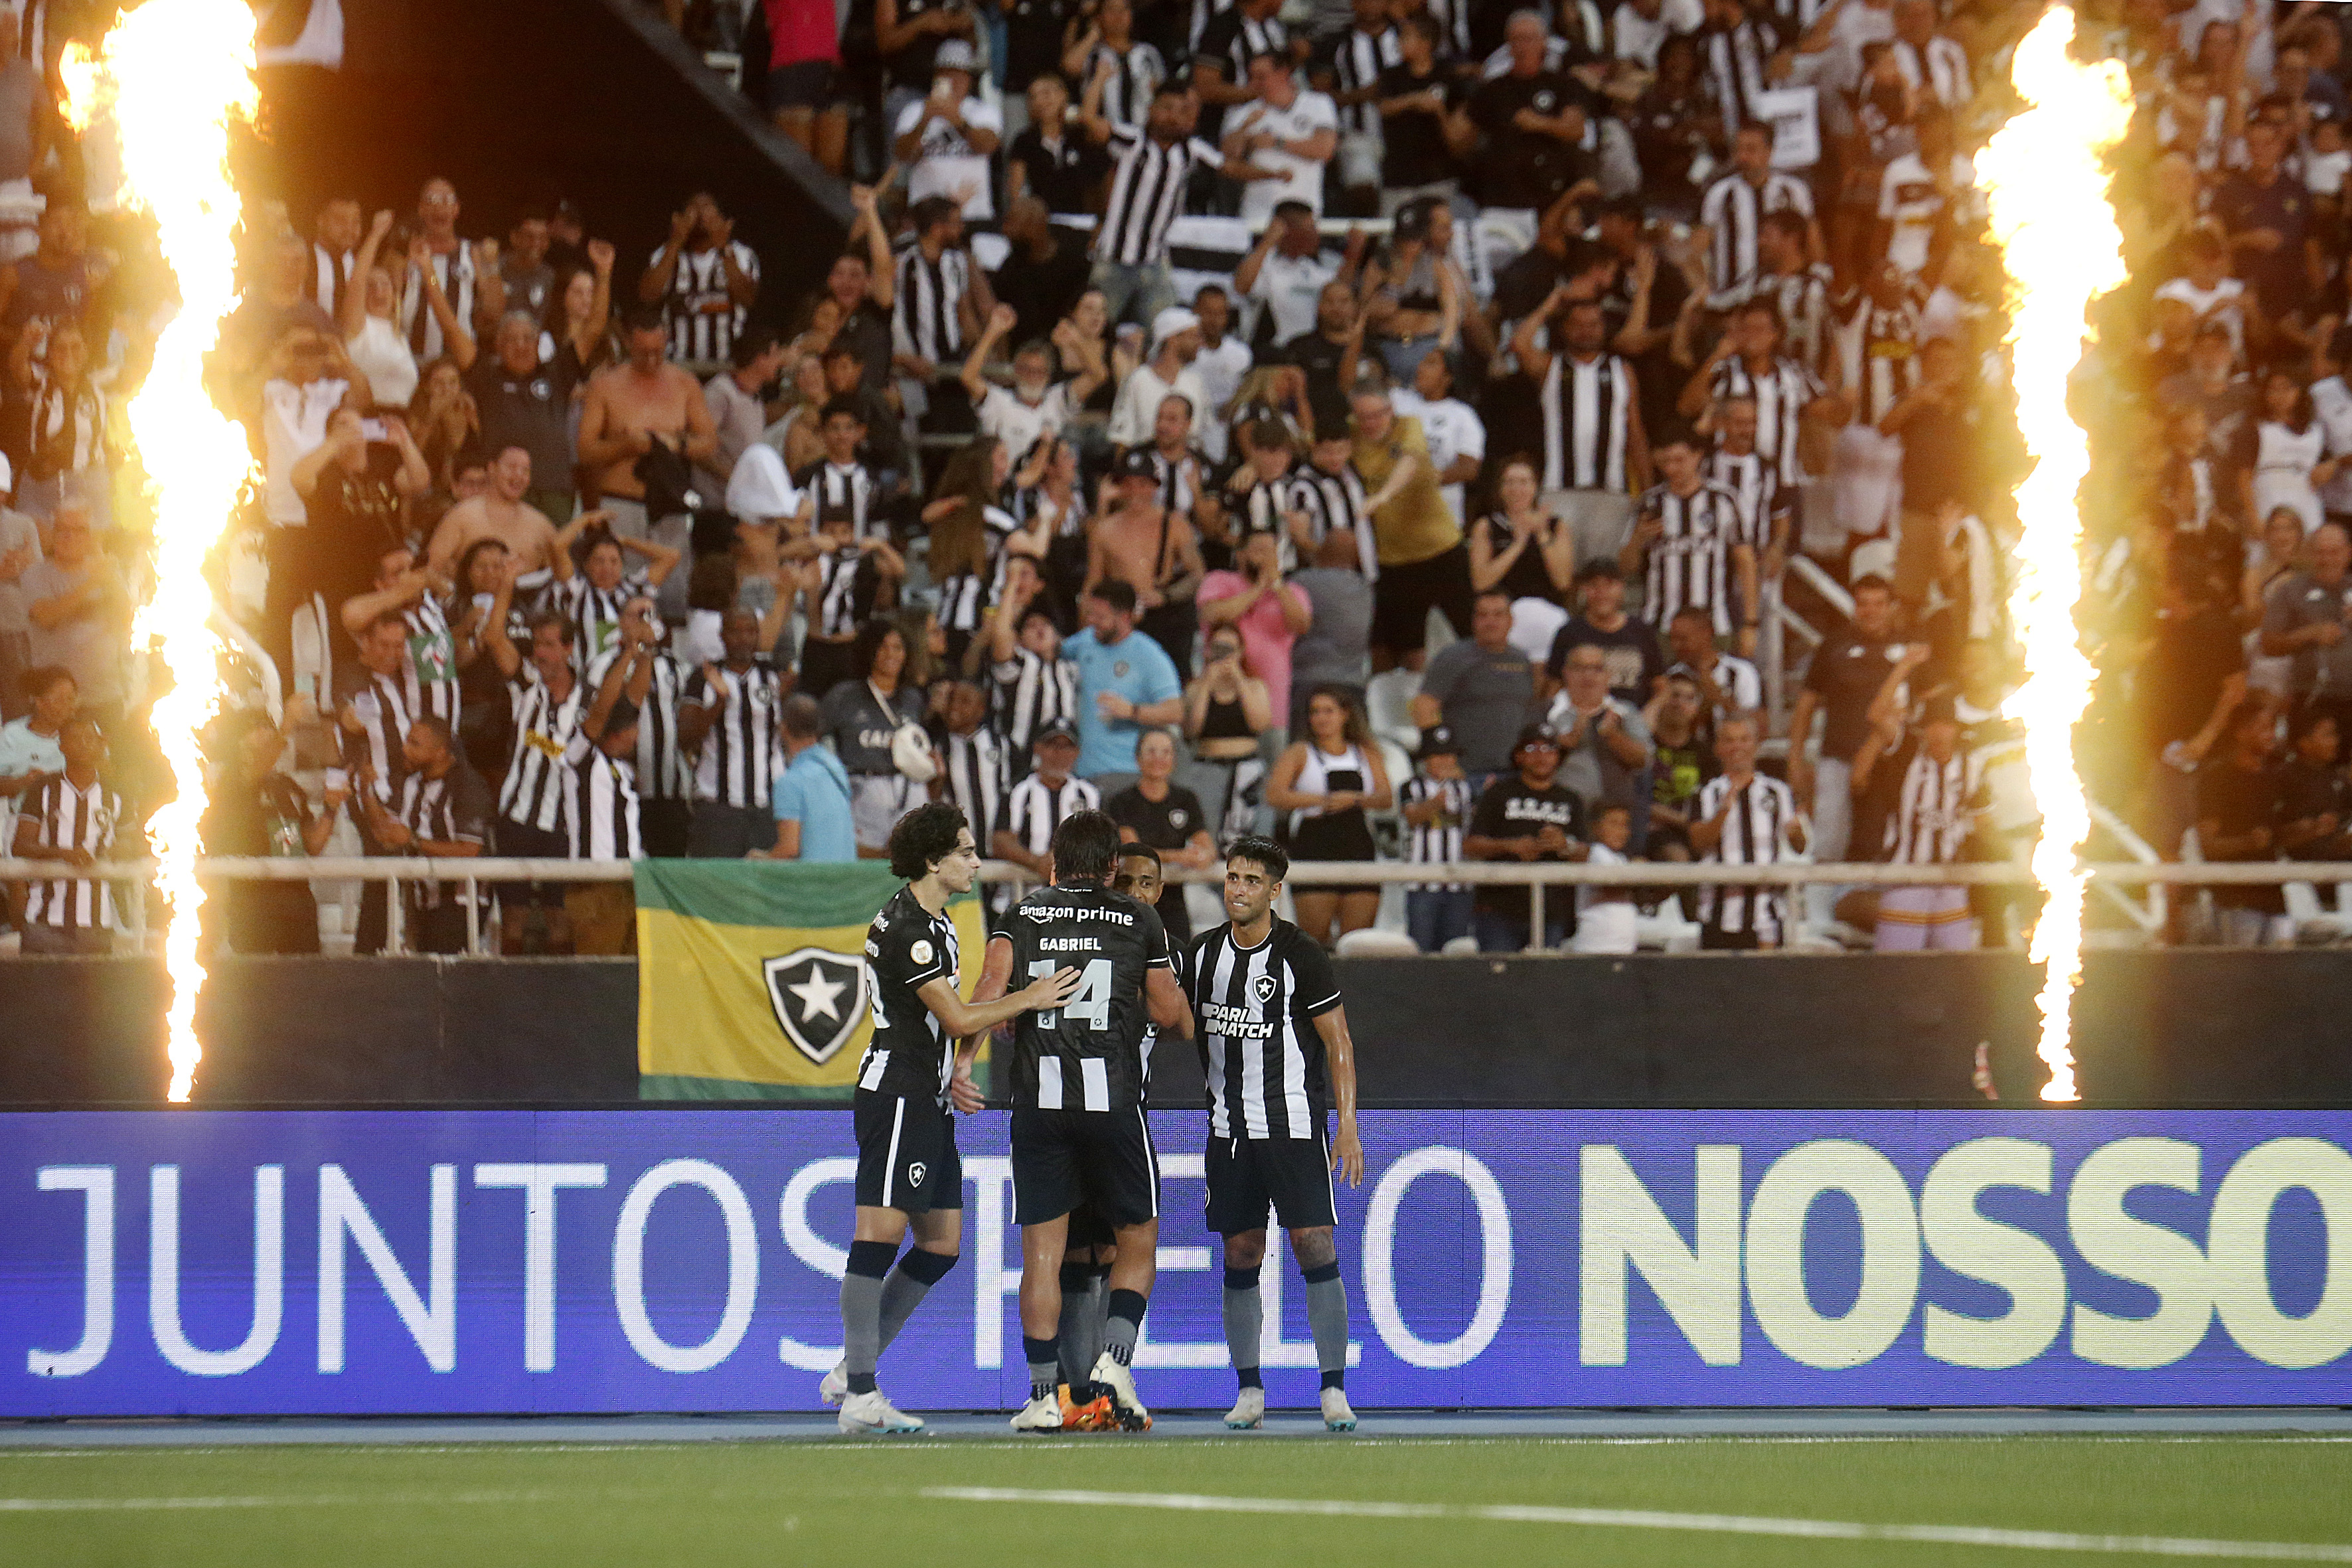 4 jogos e 4 vitórias: Botafogo é líder com 100% de aproveitamento no Brasileirão